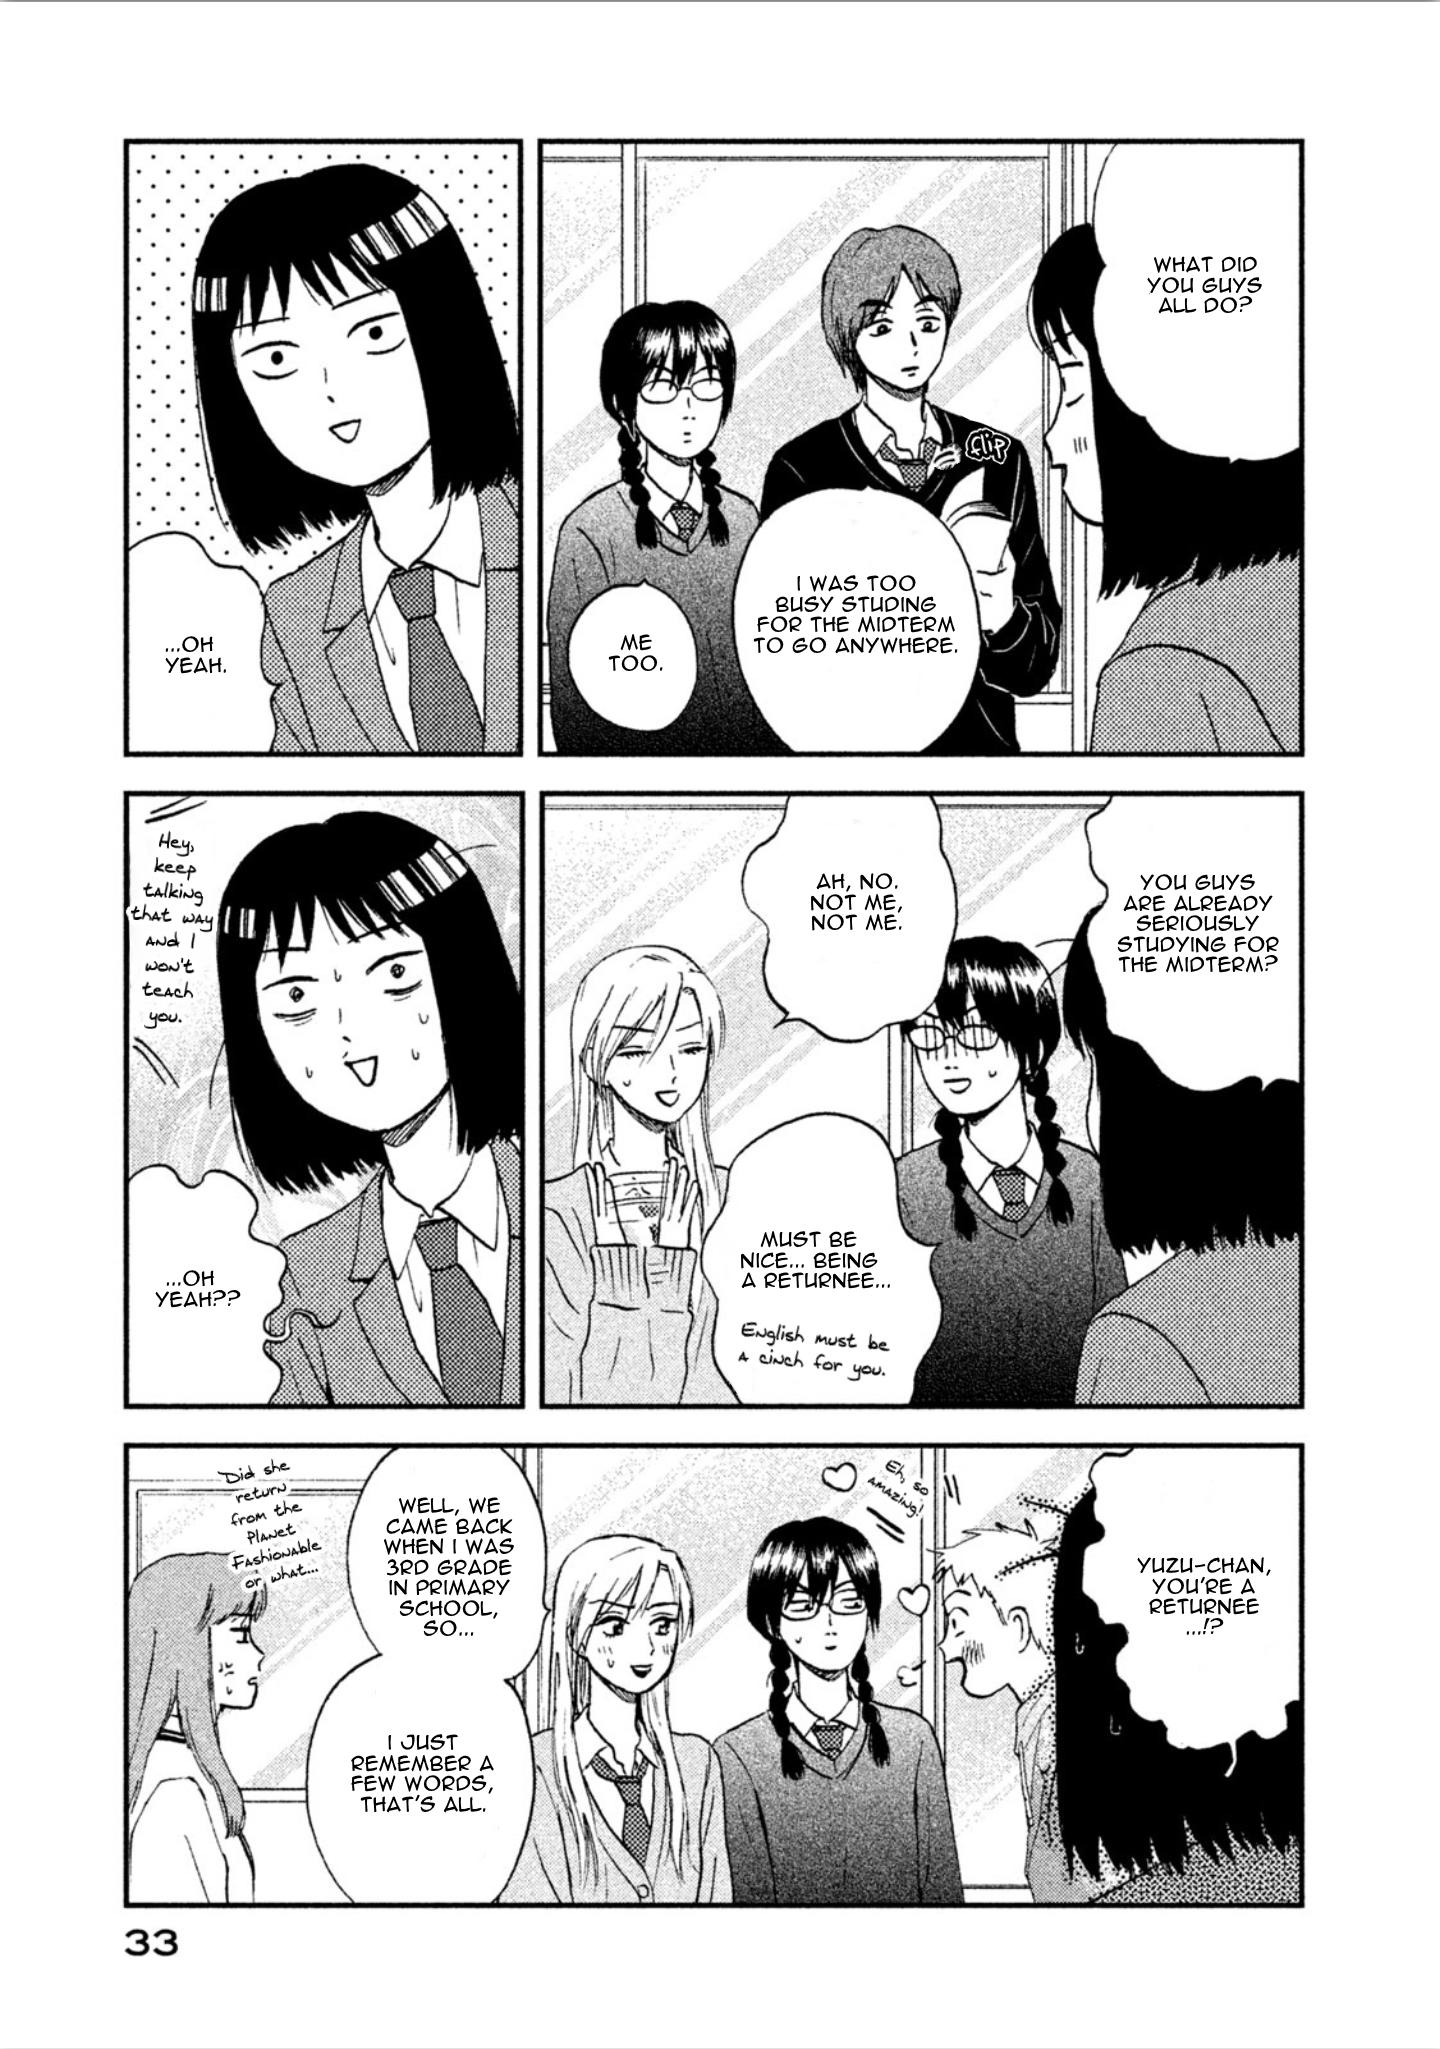 Skip and Loafer Manga Volume 7